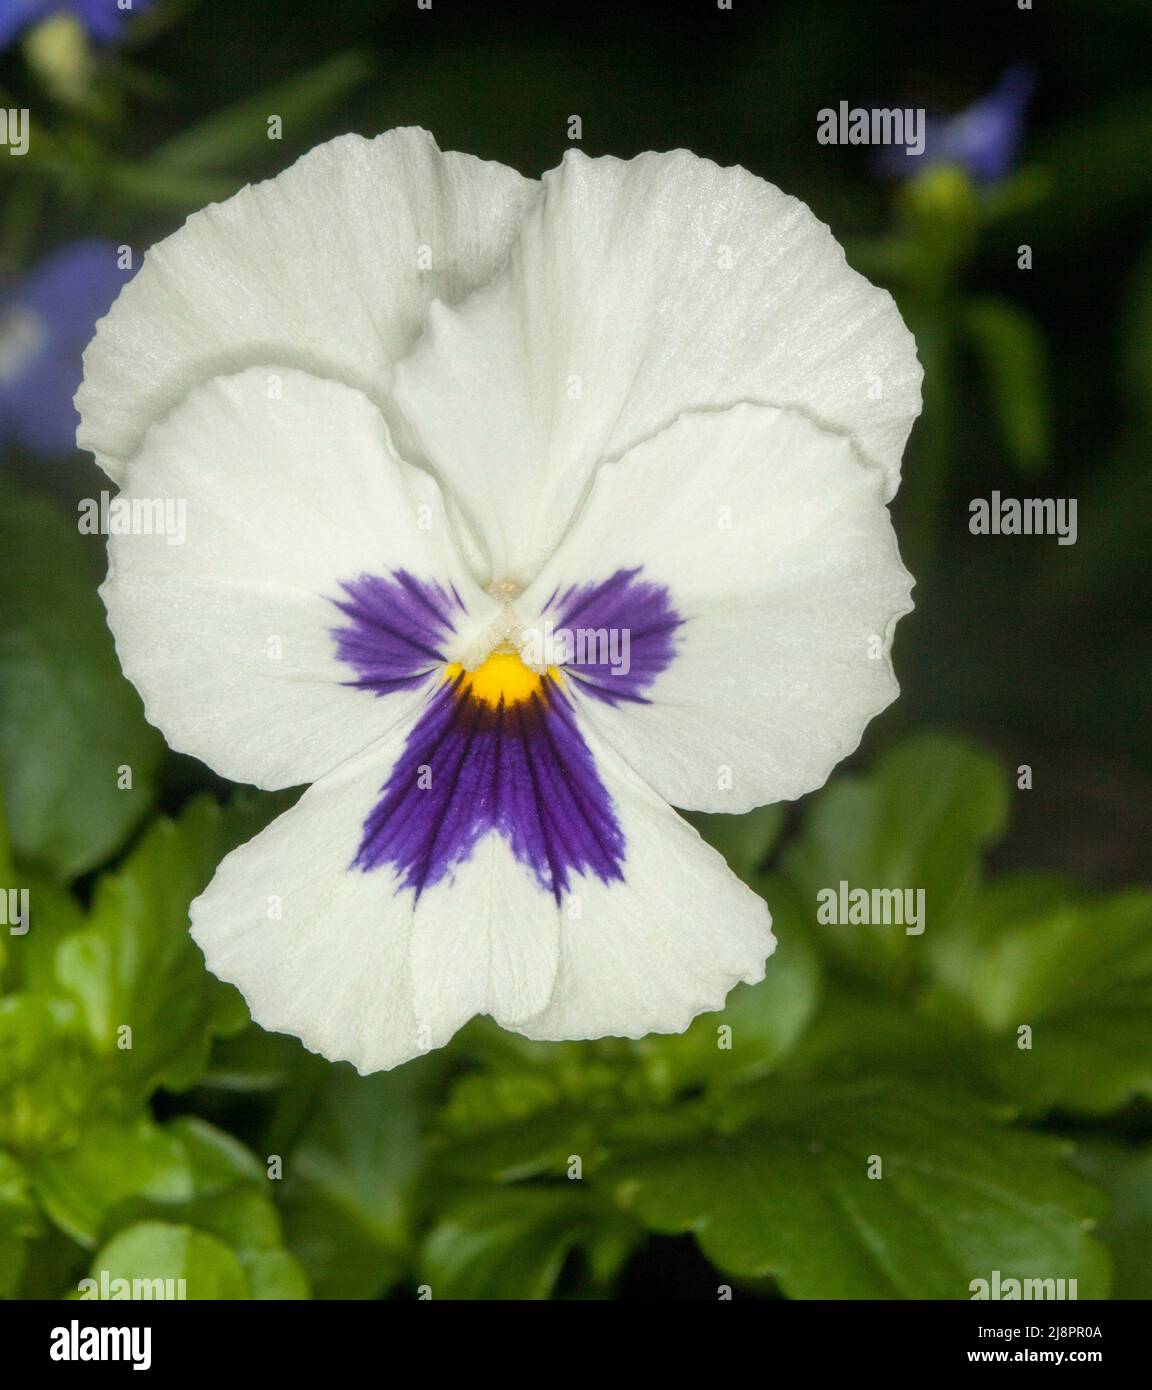 Schöne weiße Blume von Stiefmütterchen / Viola mit Spritzer von lila auf Blütenblättern, eine jährliche Gartenpflanze, auf dem Hintergrund von leuchtend grünen Blättern Stockfoto